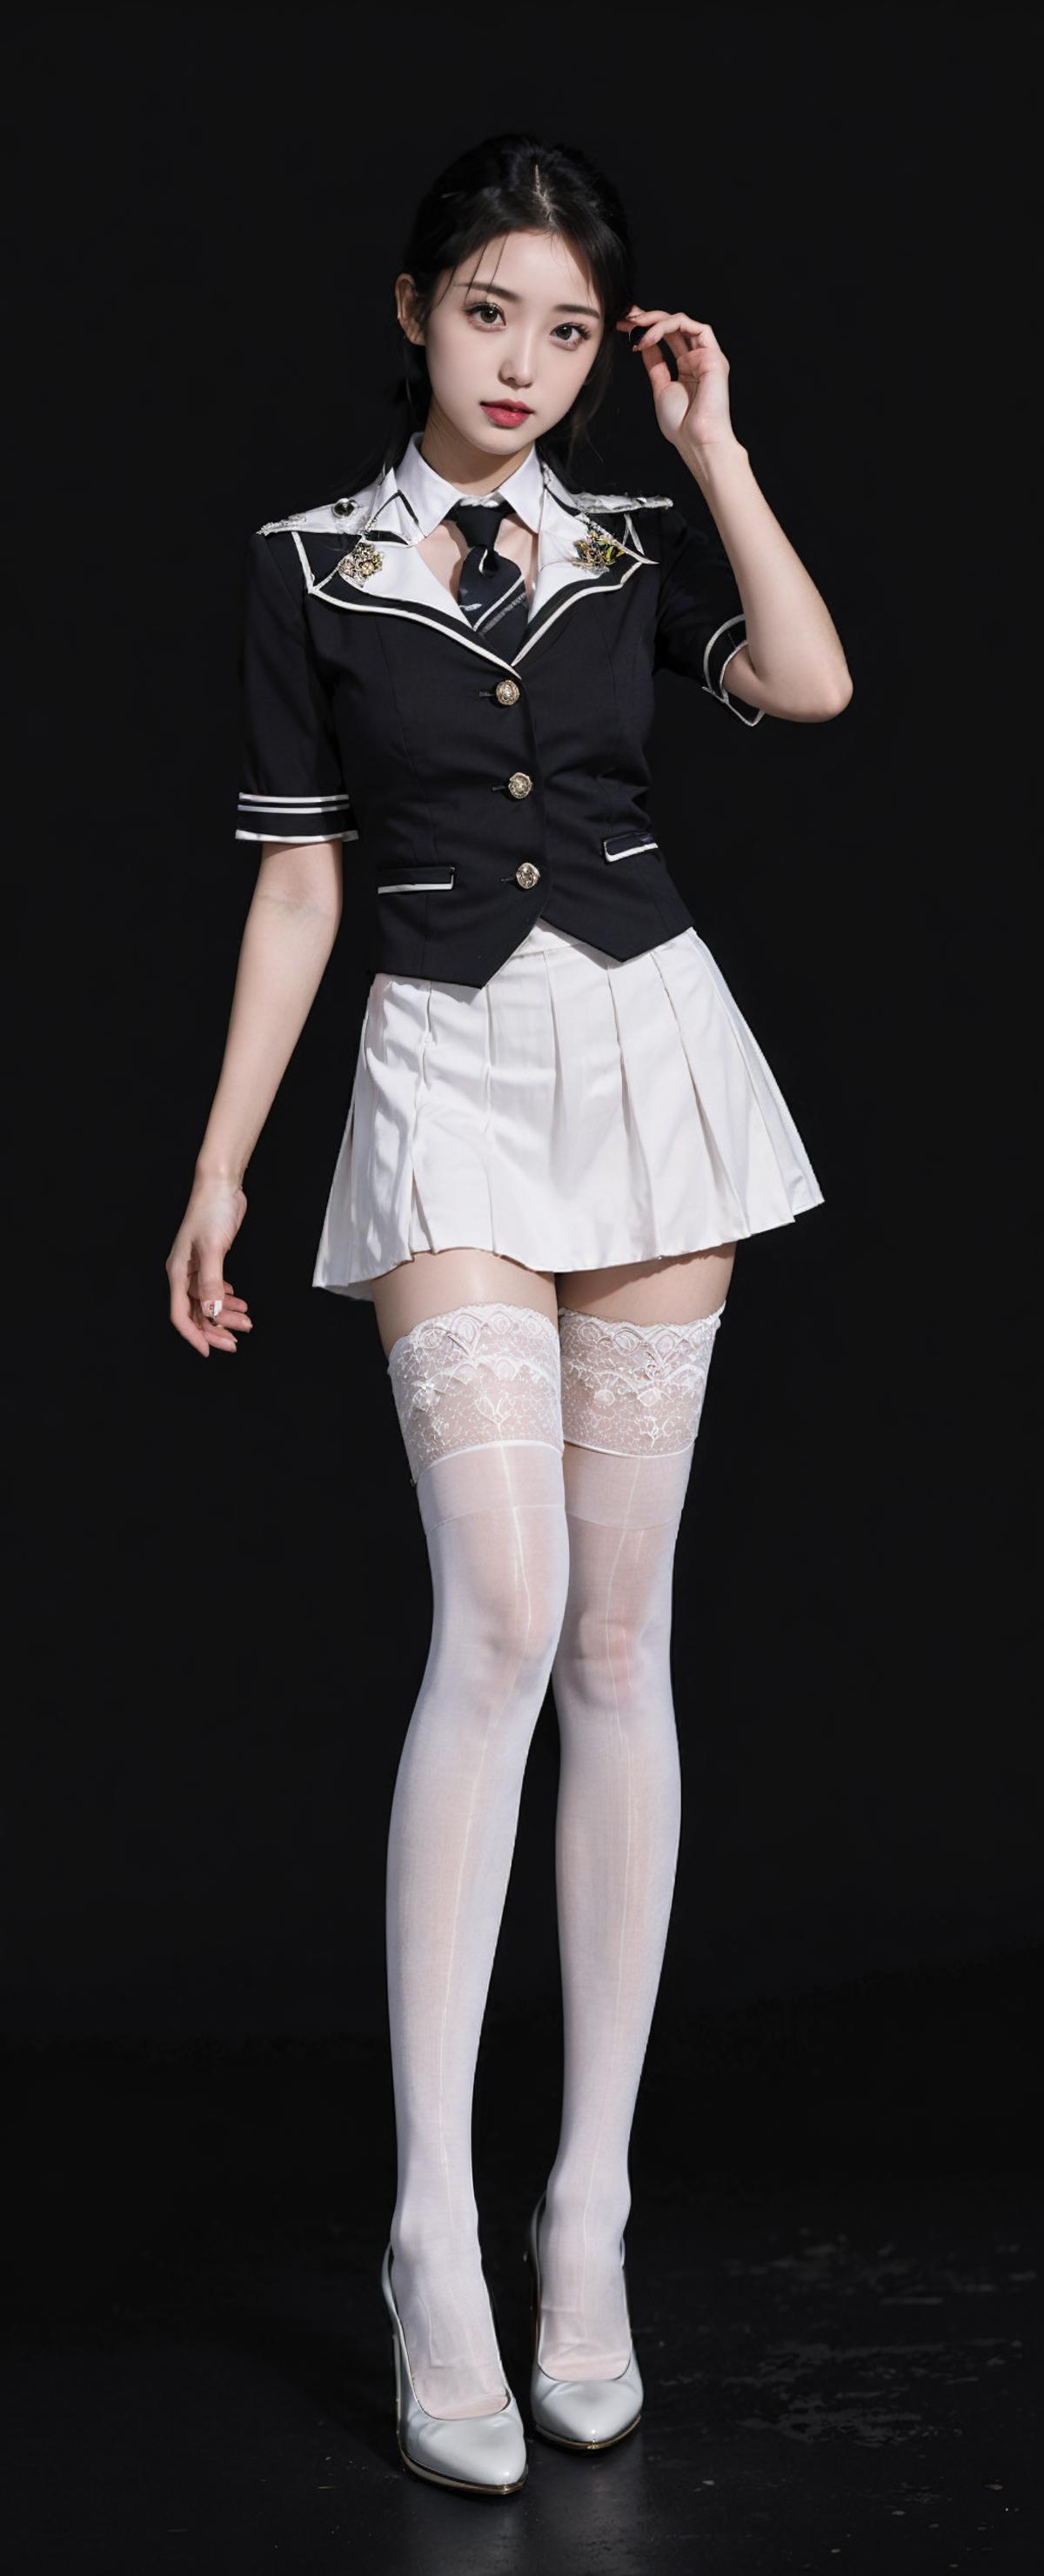 tutu's HiSilk(8D White Glossy Over-the-Knee Socks)/ 图图的嗨丝（8D白色油亮长筒袜）/チュチュのハイシー（8D白色のオイル光沢長い膝上靴下） image by tututututuz